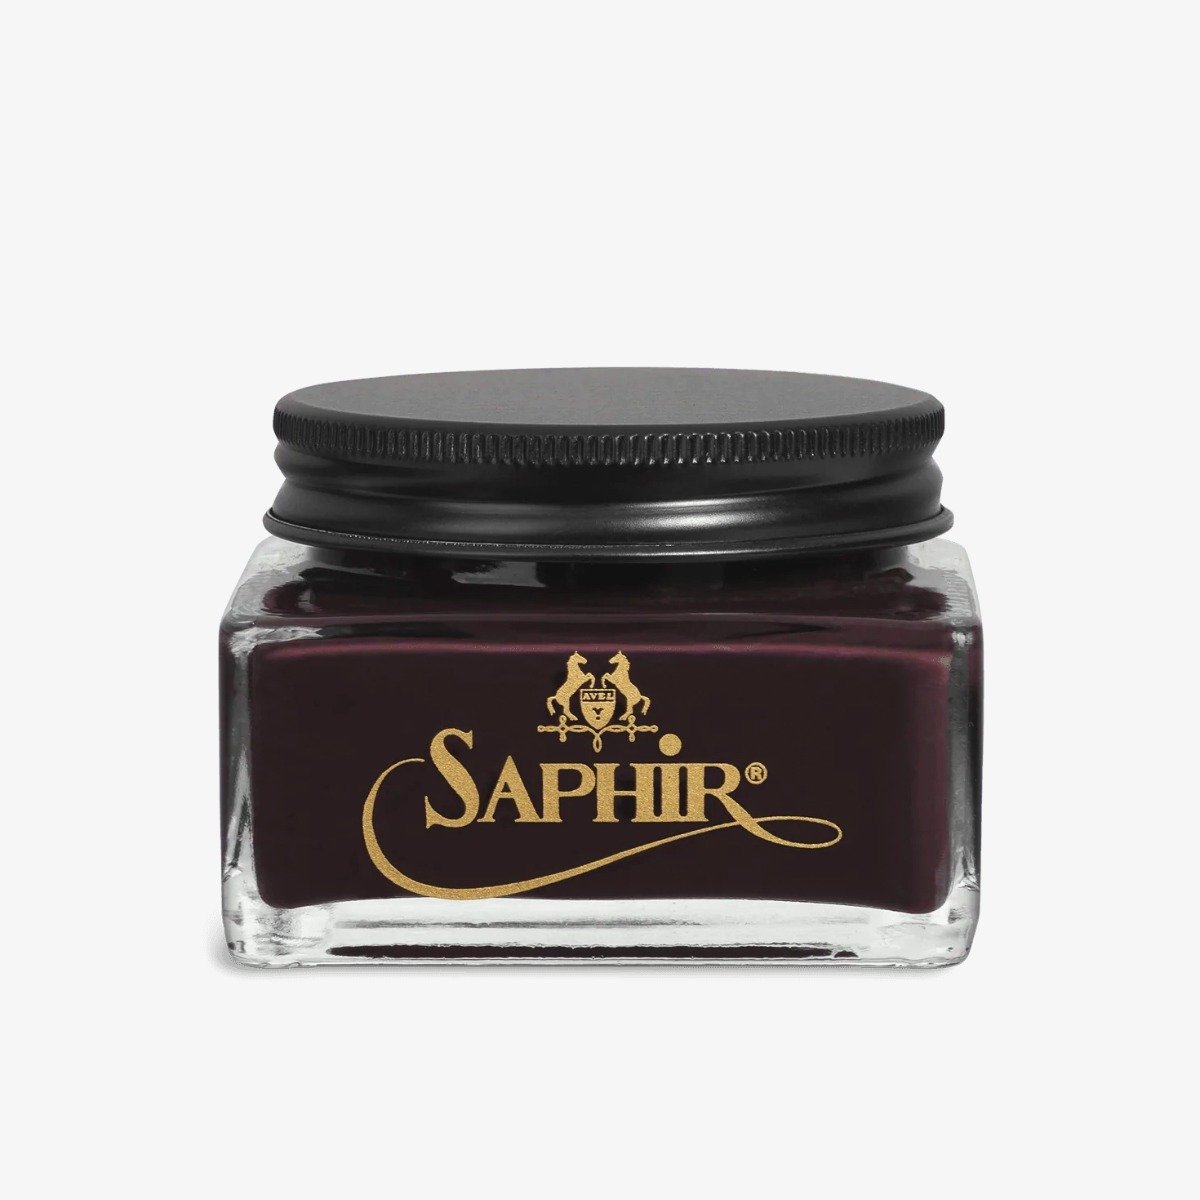 Saphir Creme 1925 burgundy